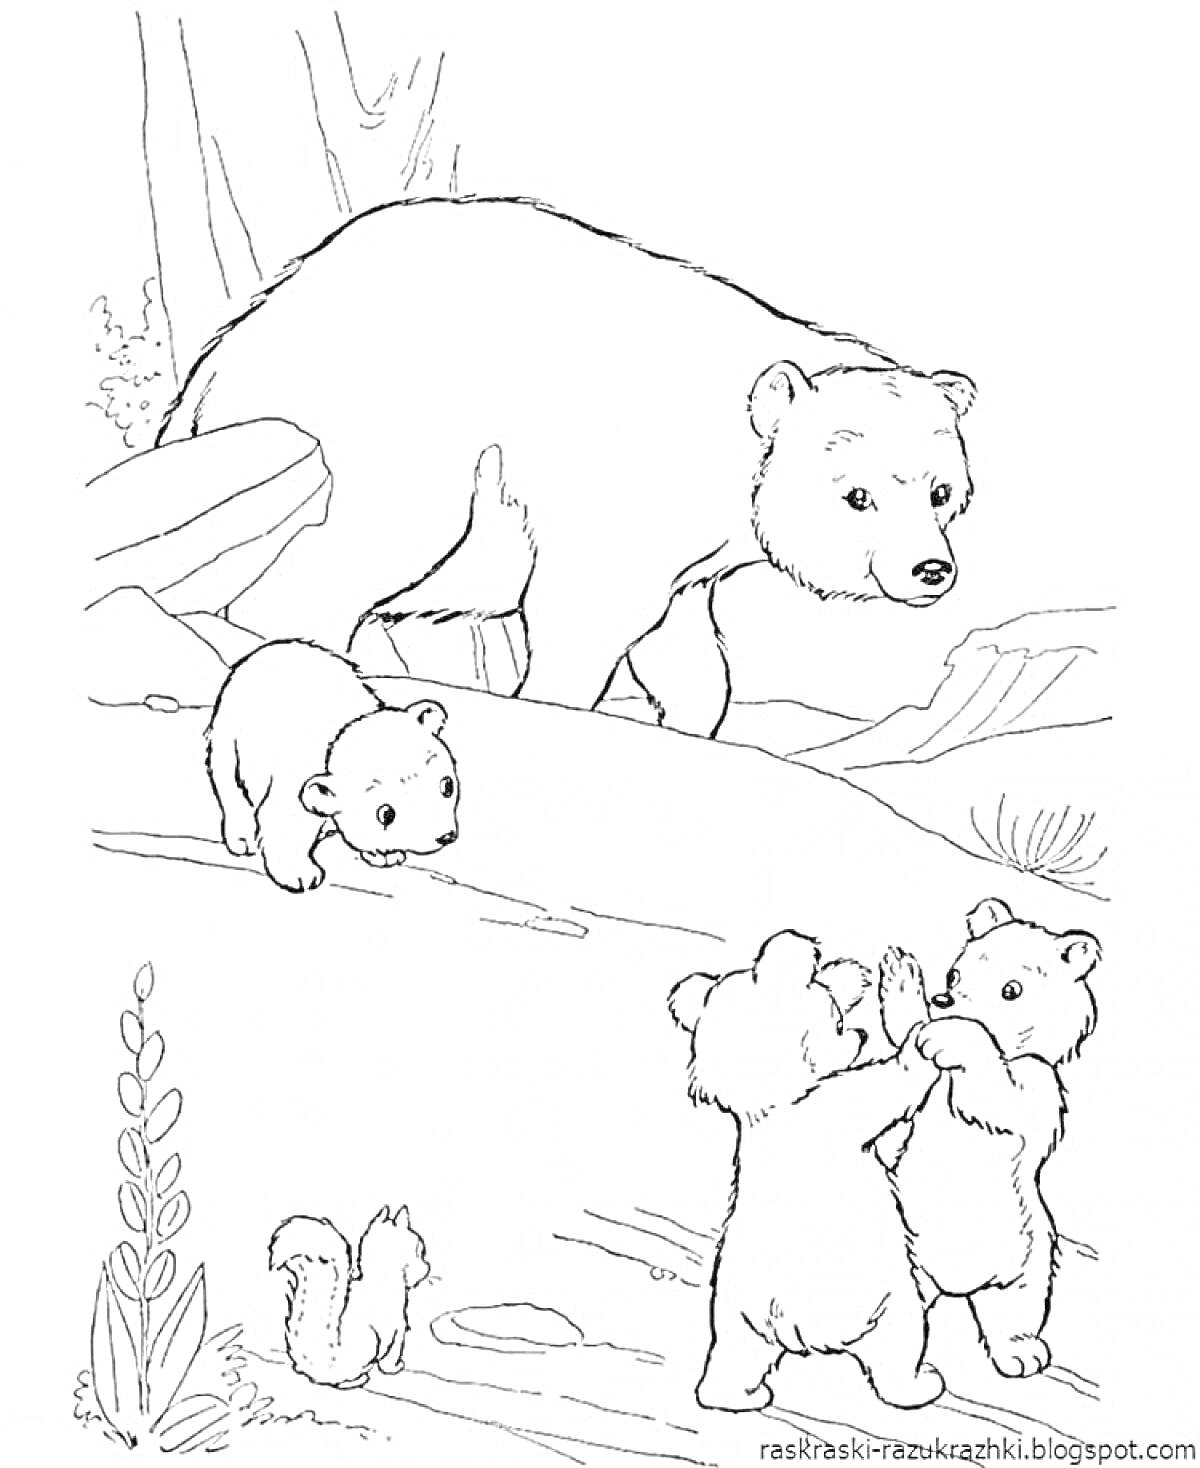 Раскраска Медведица с тремя медвежатами в лесу возле камней и кустарника